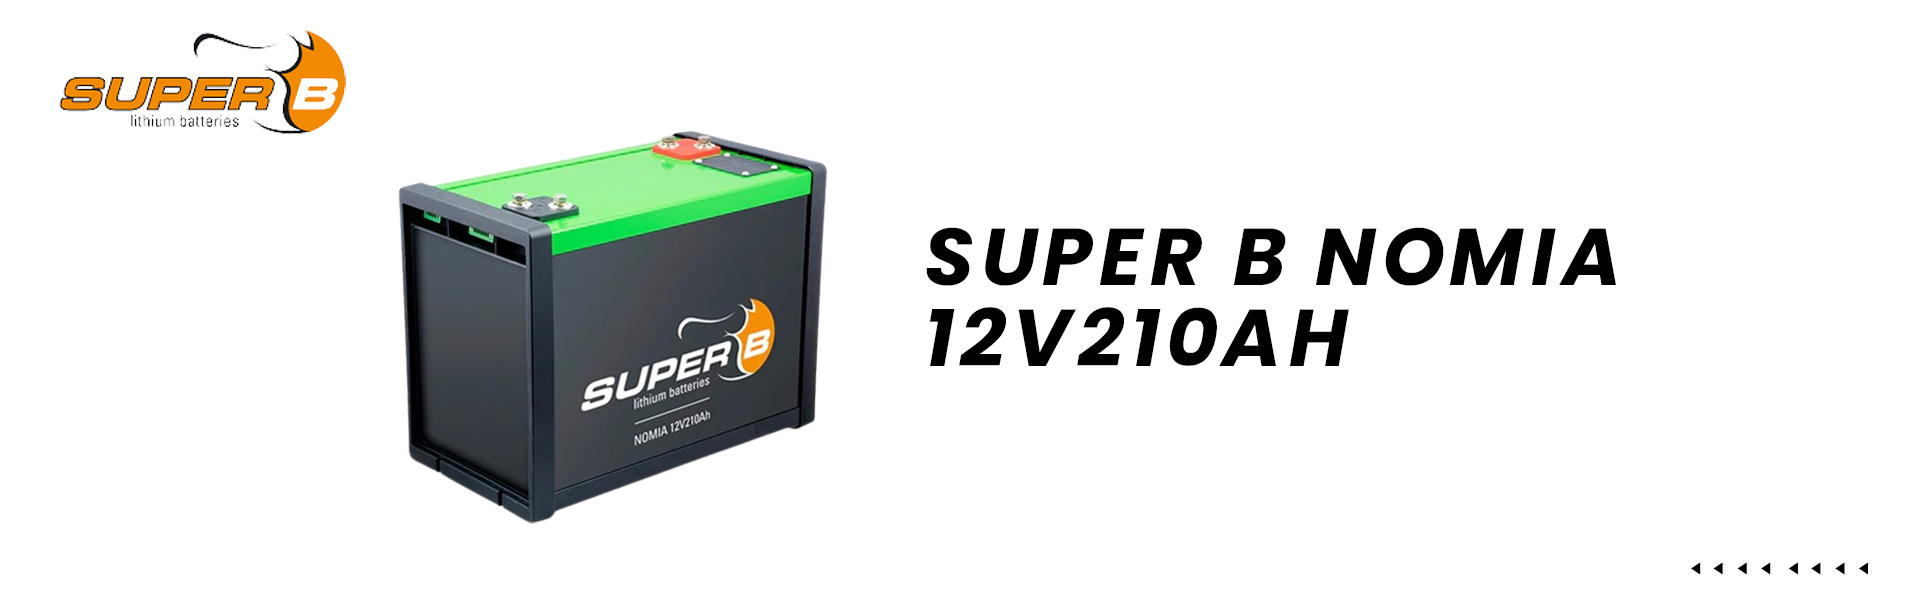 SuperB-Nomia-12V210AH